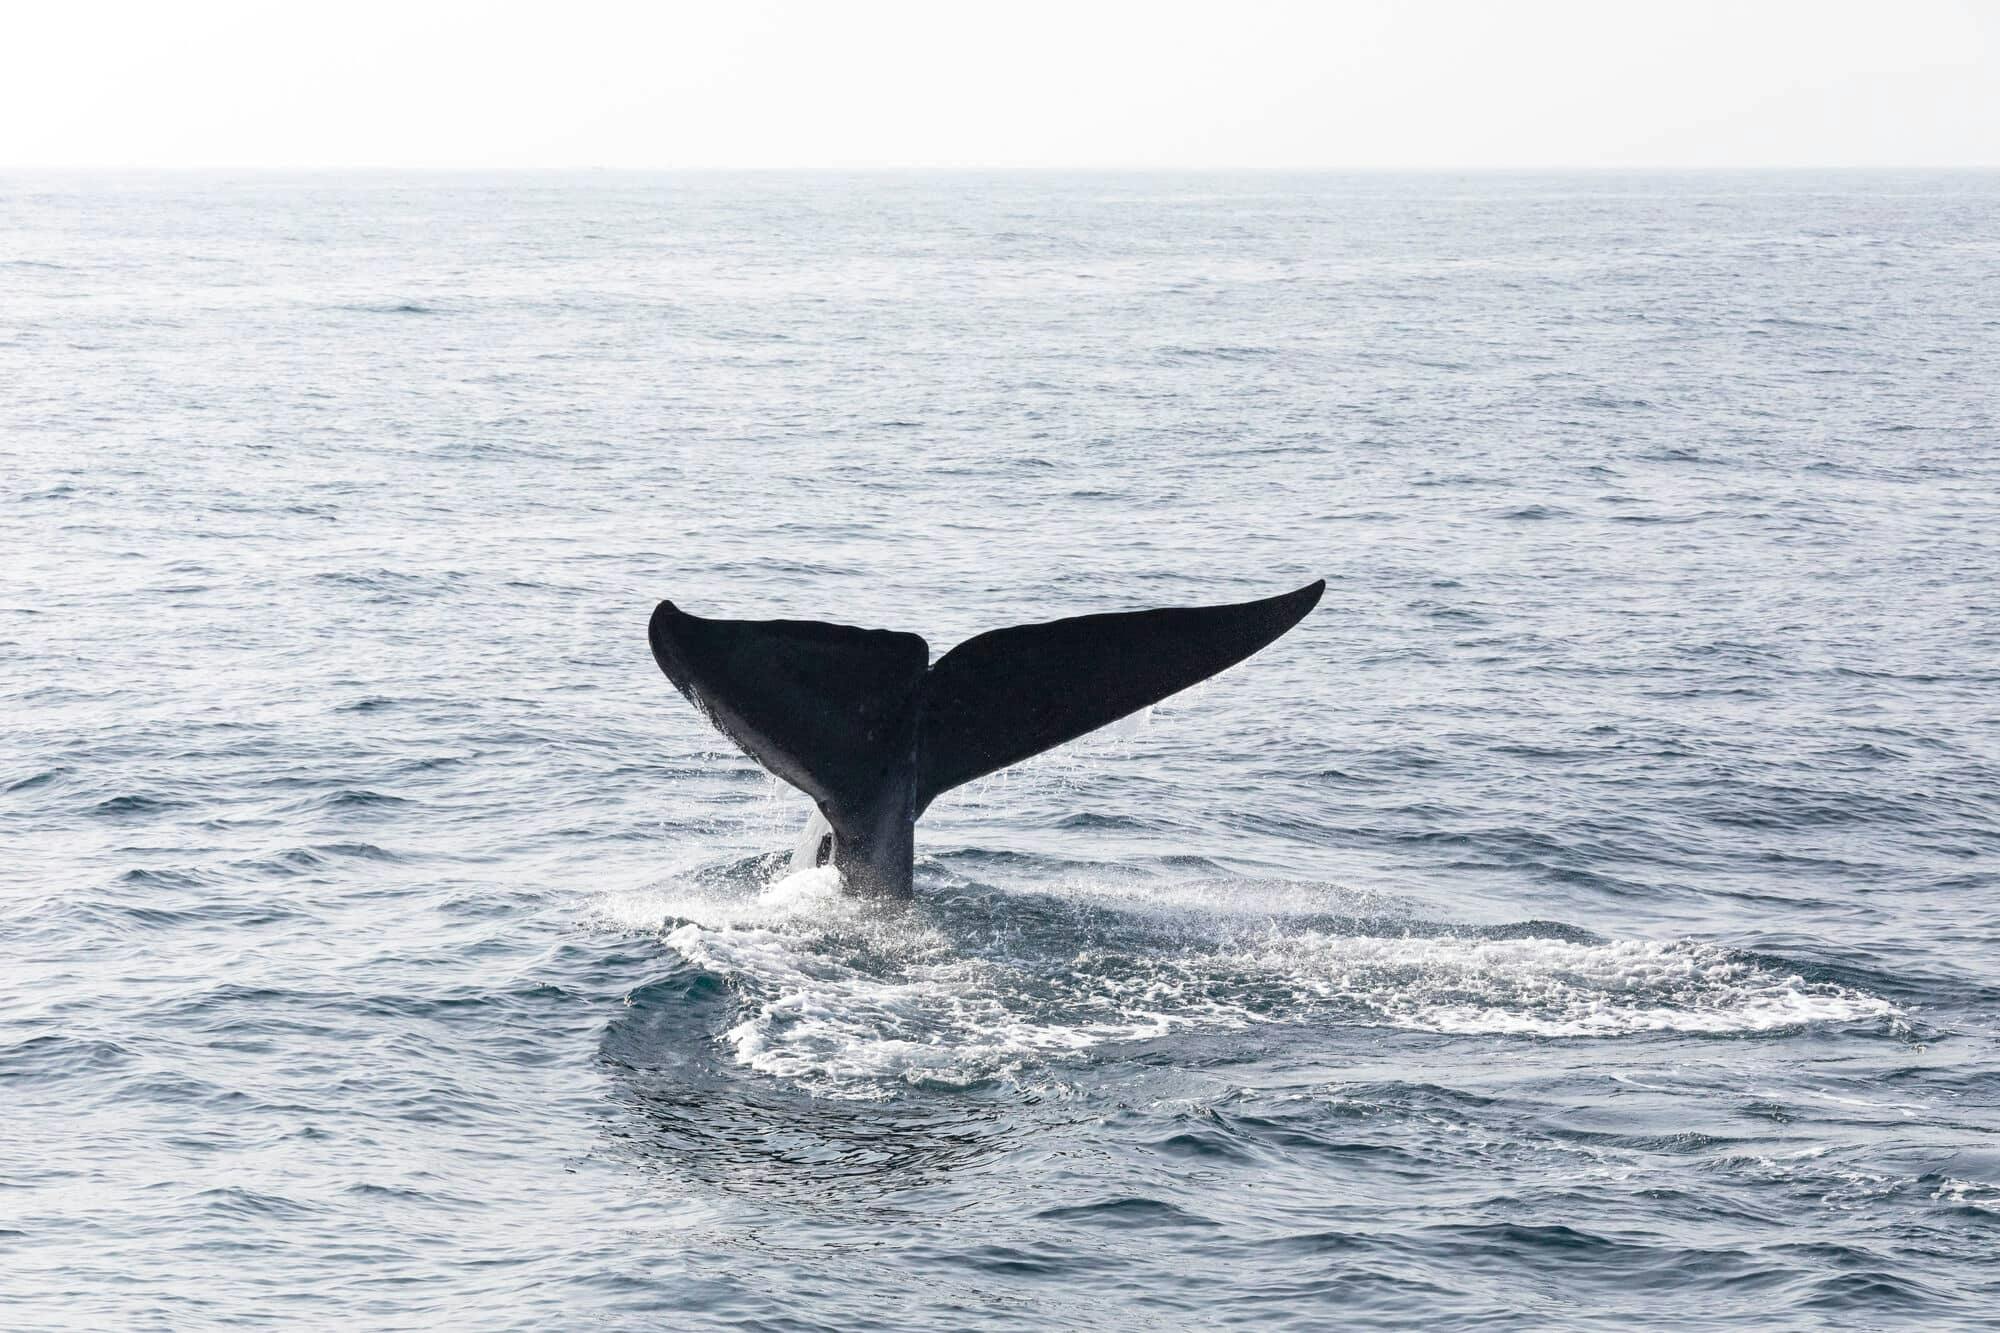 Tour di osservazione delle balene con La Farola e l'Isola Bacardi